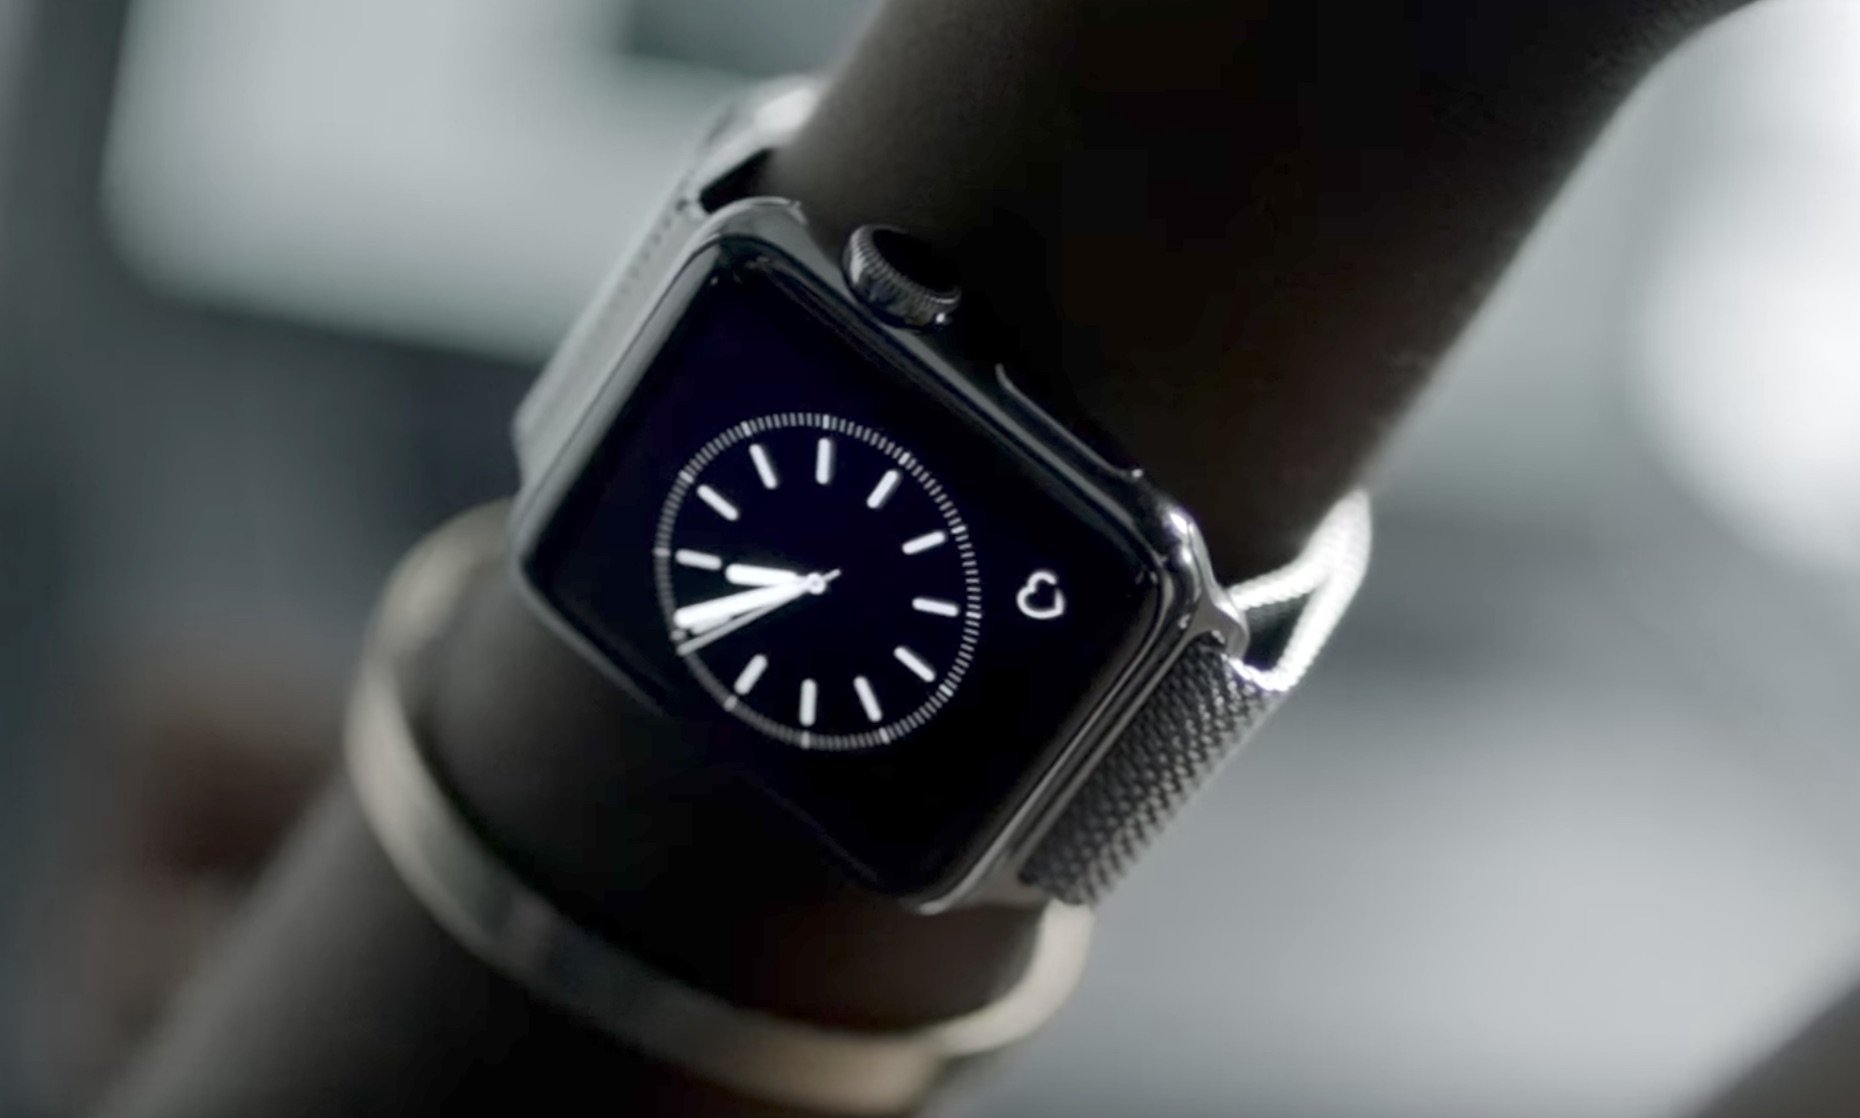 Apple Watch Bands: Nike kündigt neue Modelle mit passenden Schuhen an 4